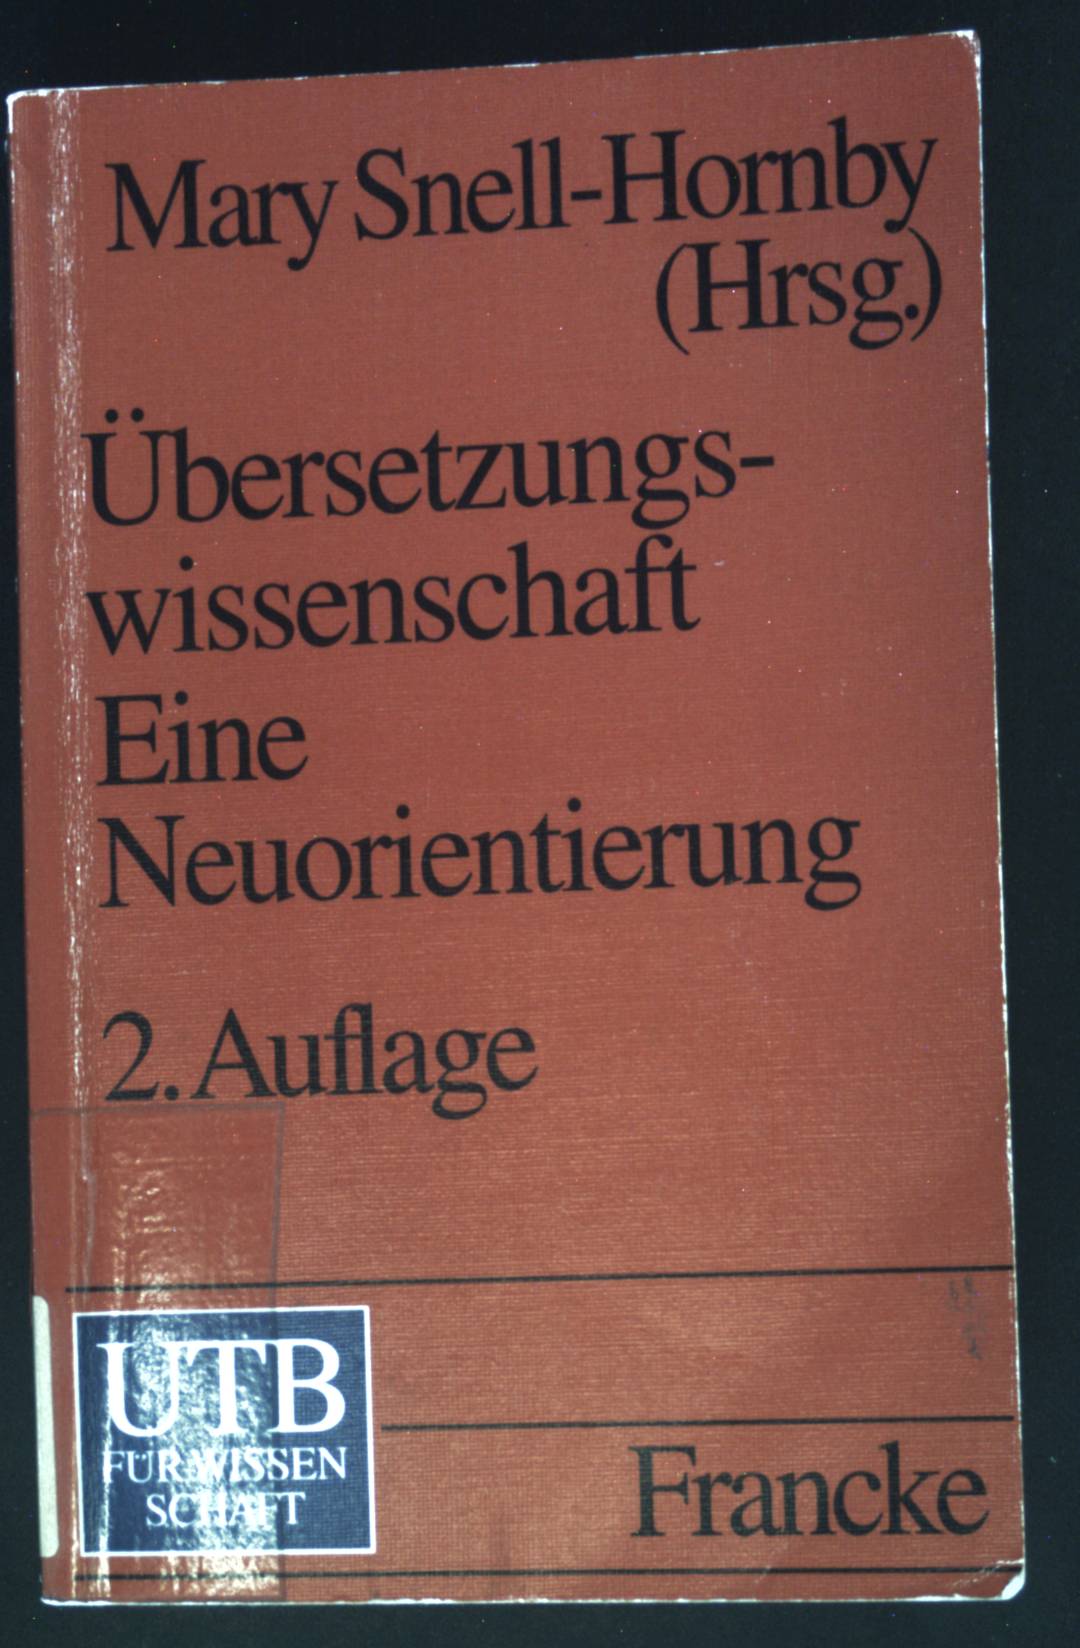 Übersetzungswissenschaft - eine Neuorientierung : zur Integrierung von Theorie und Praxis. UTB ; 1415 - Snell-Hornby, Mary